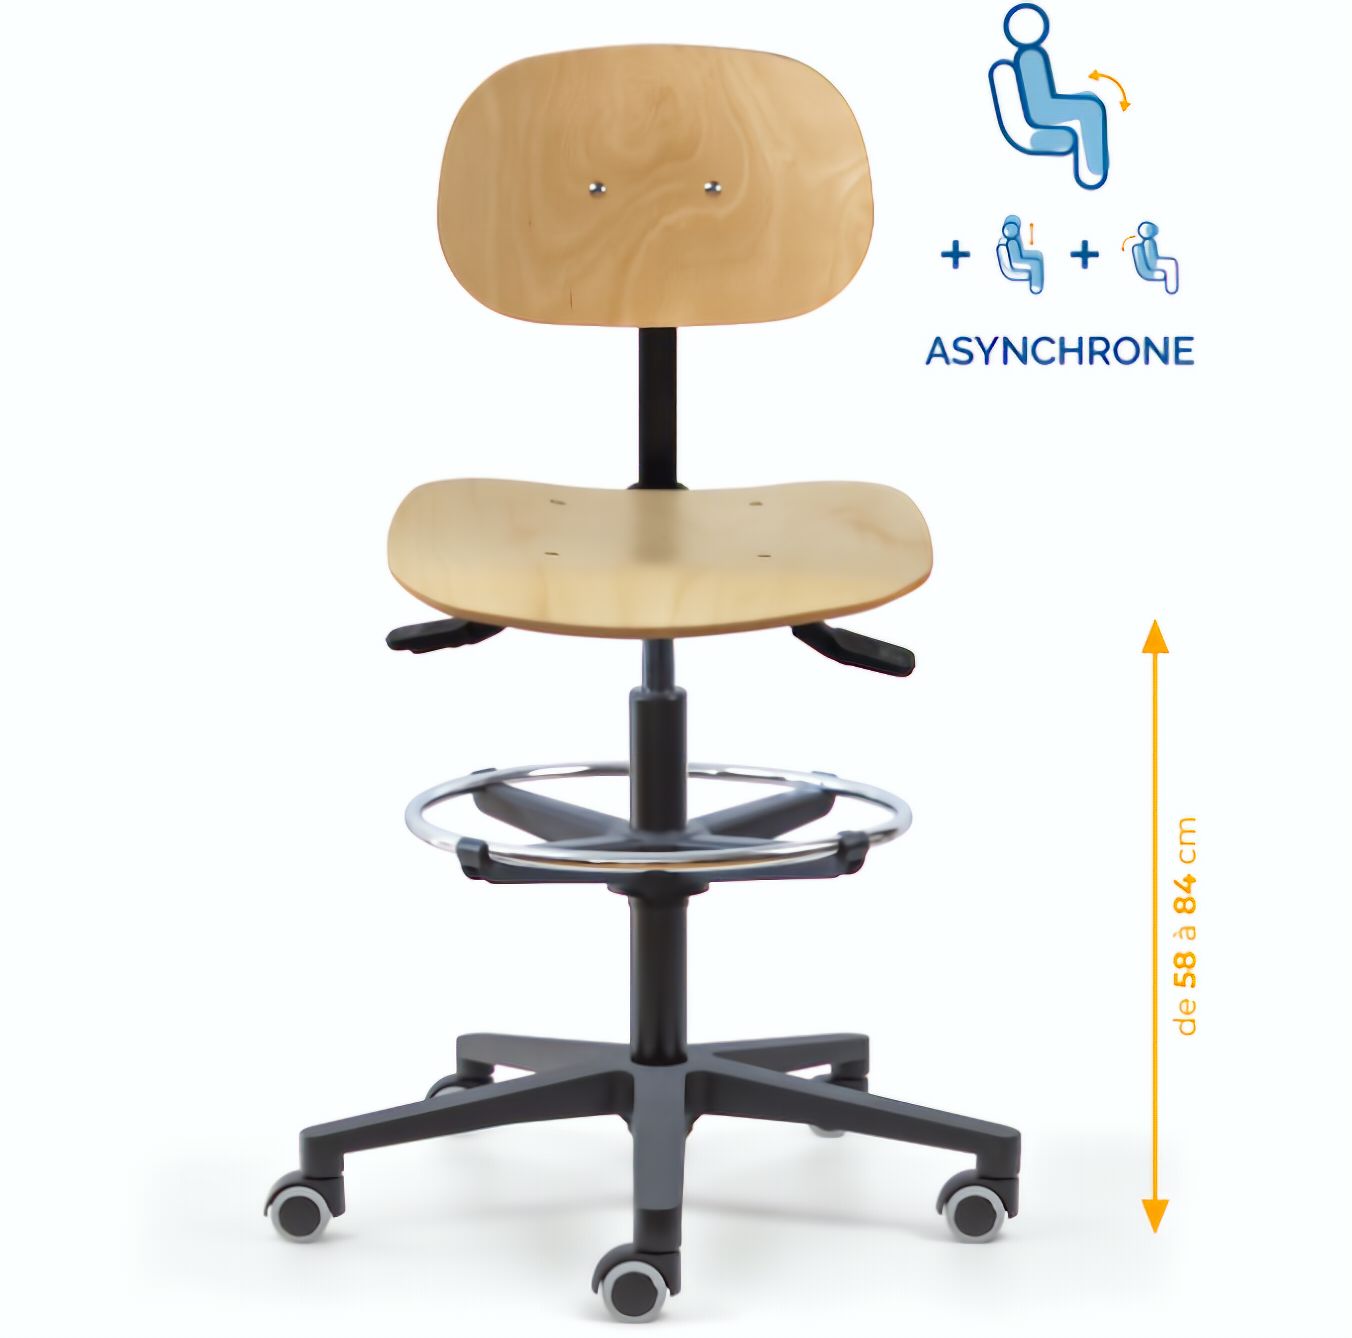 Chaise atelier bois, Chaise d'atelier en bois, chaise atelier en bois ergonomique, chaise atelier asynchrone en bois, chaise d'atelier professionnel, mobilier de bureau, Besançon